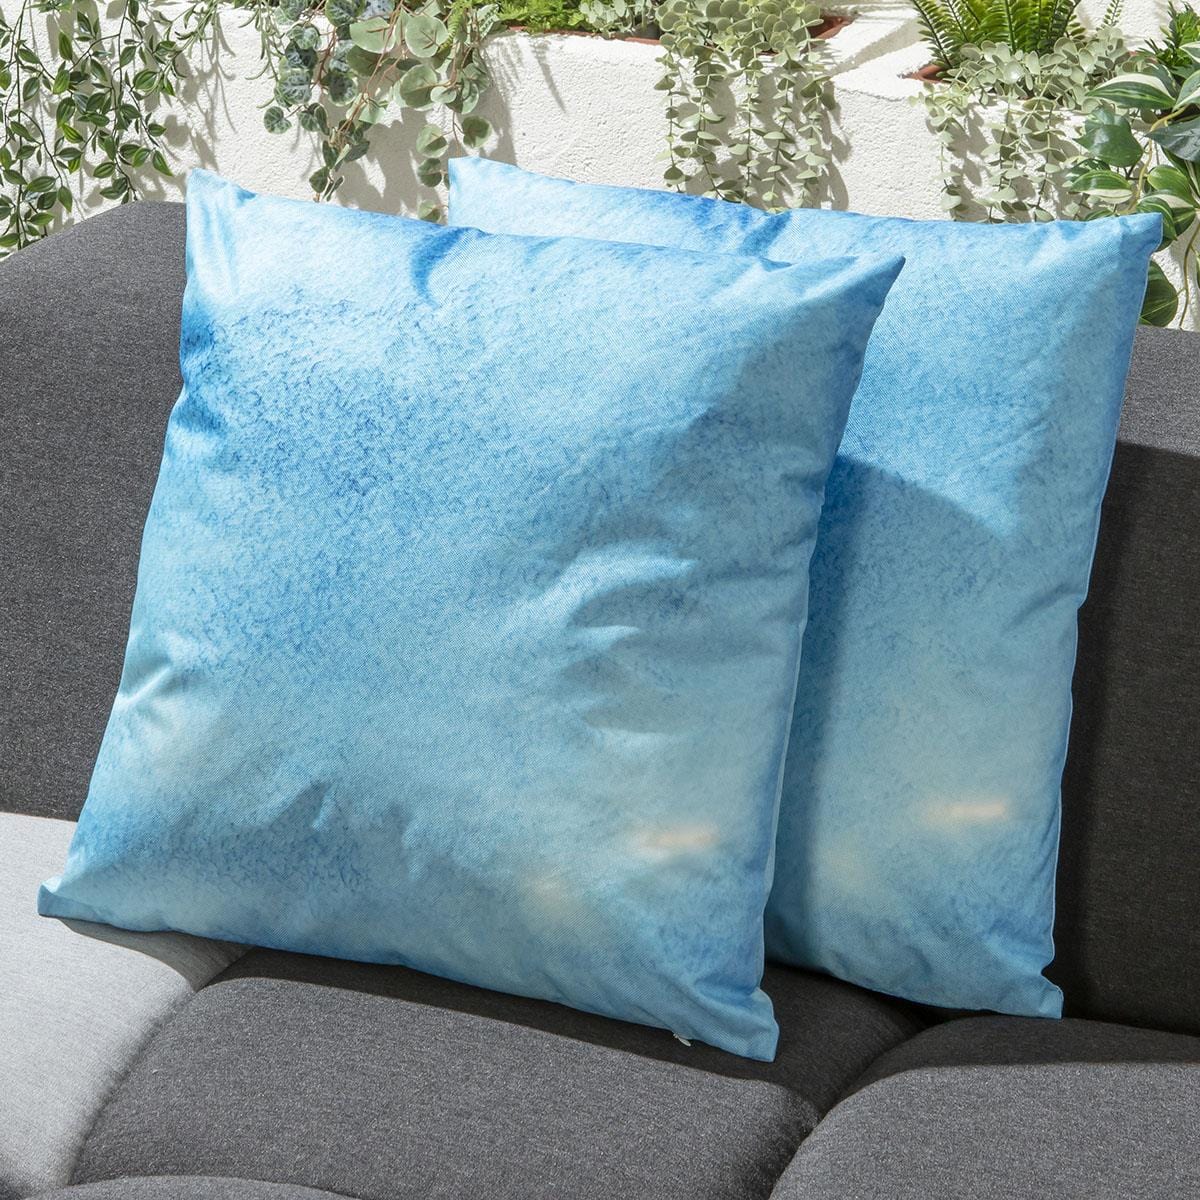 Quatropi 2 Blue Wash Outdoor Cushions 45cm